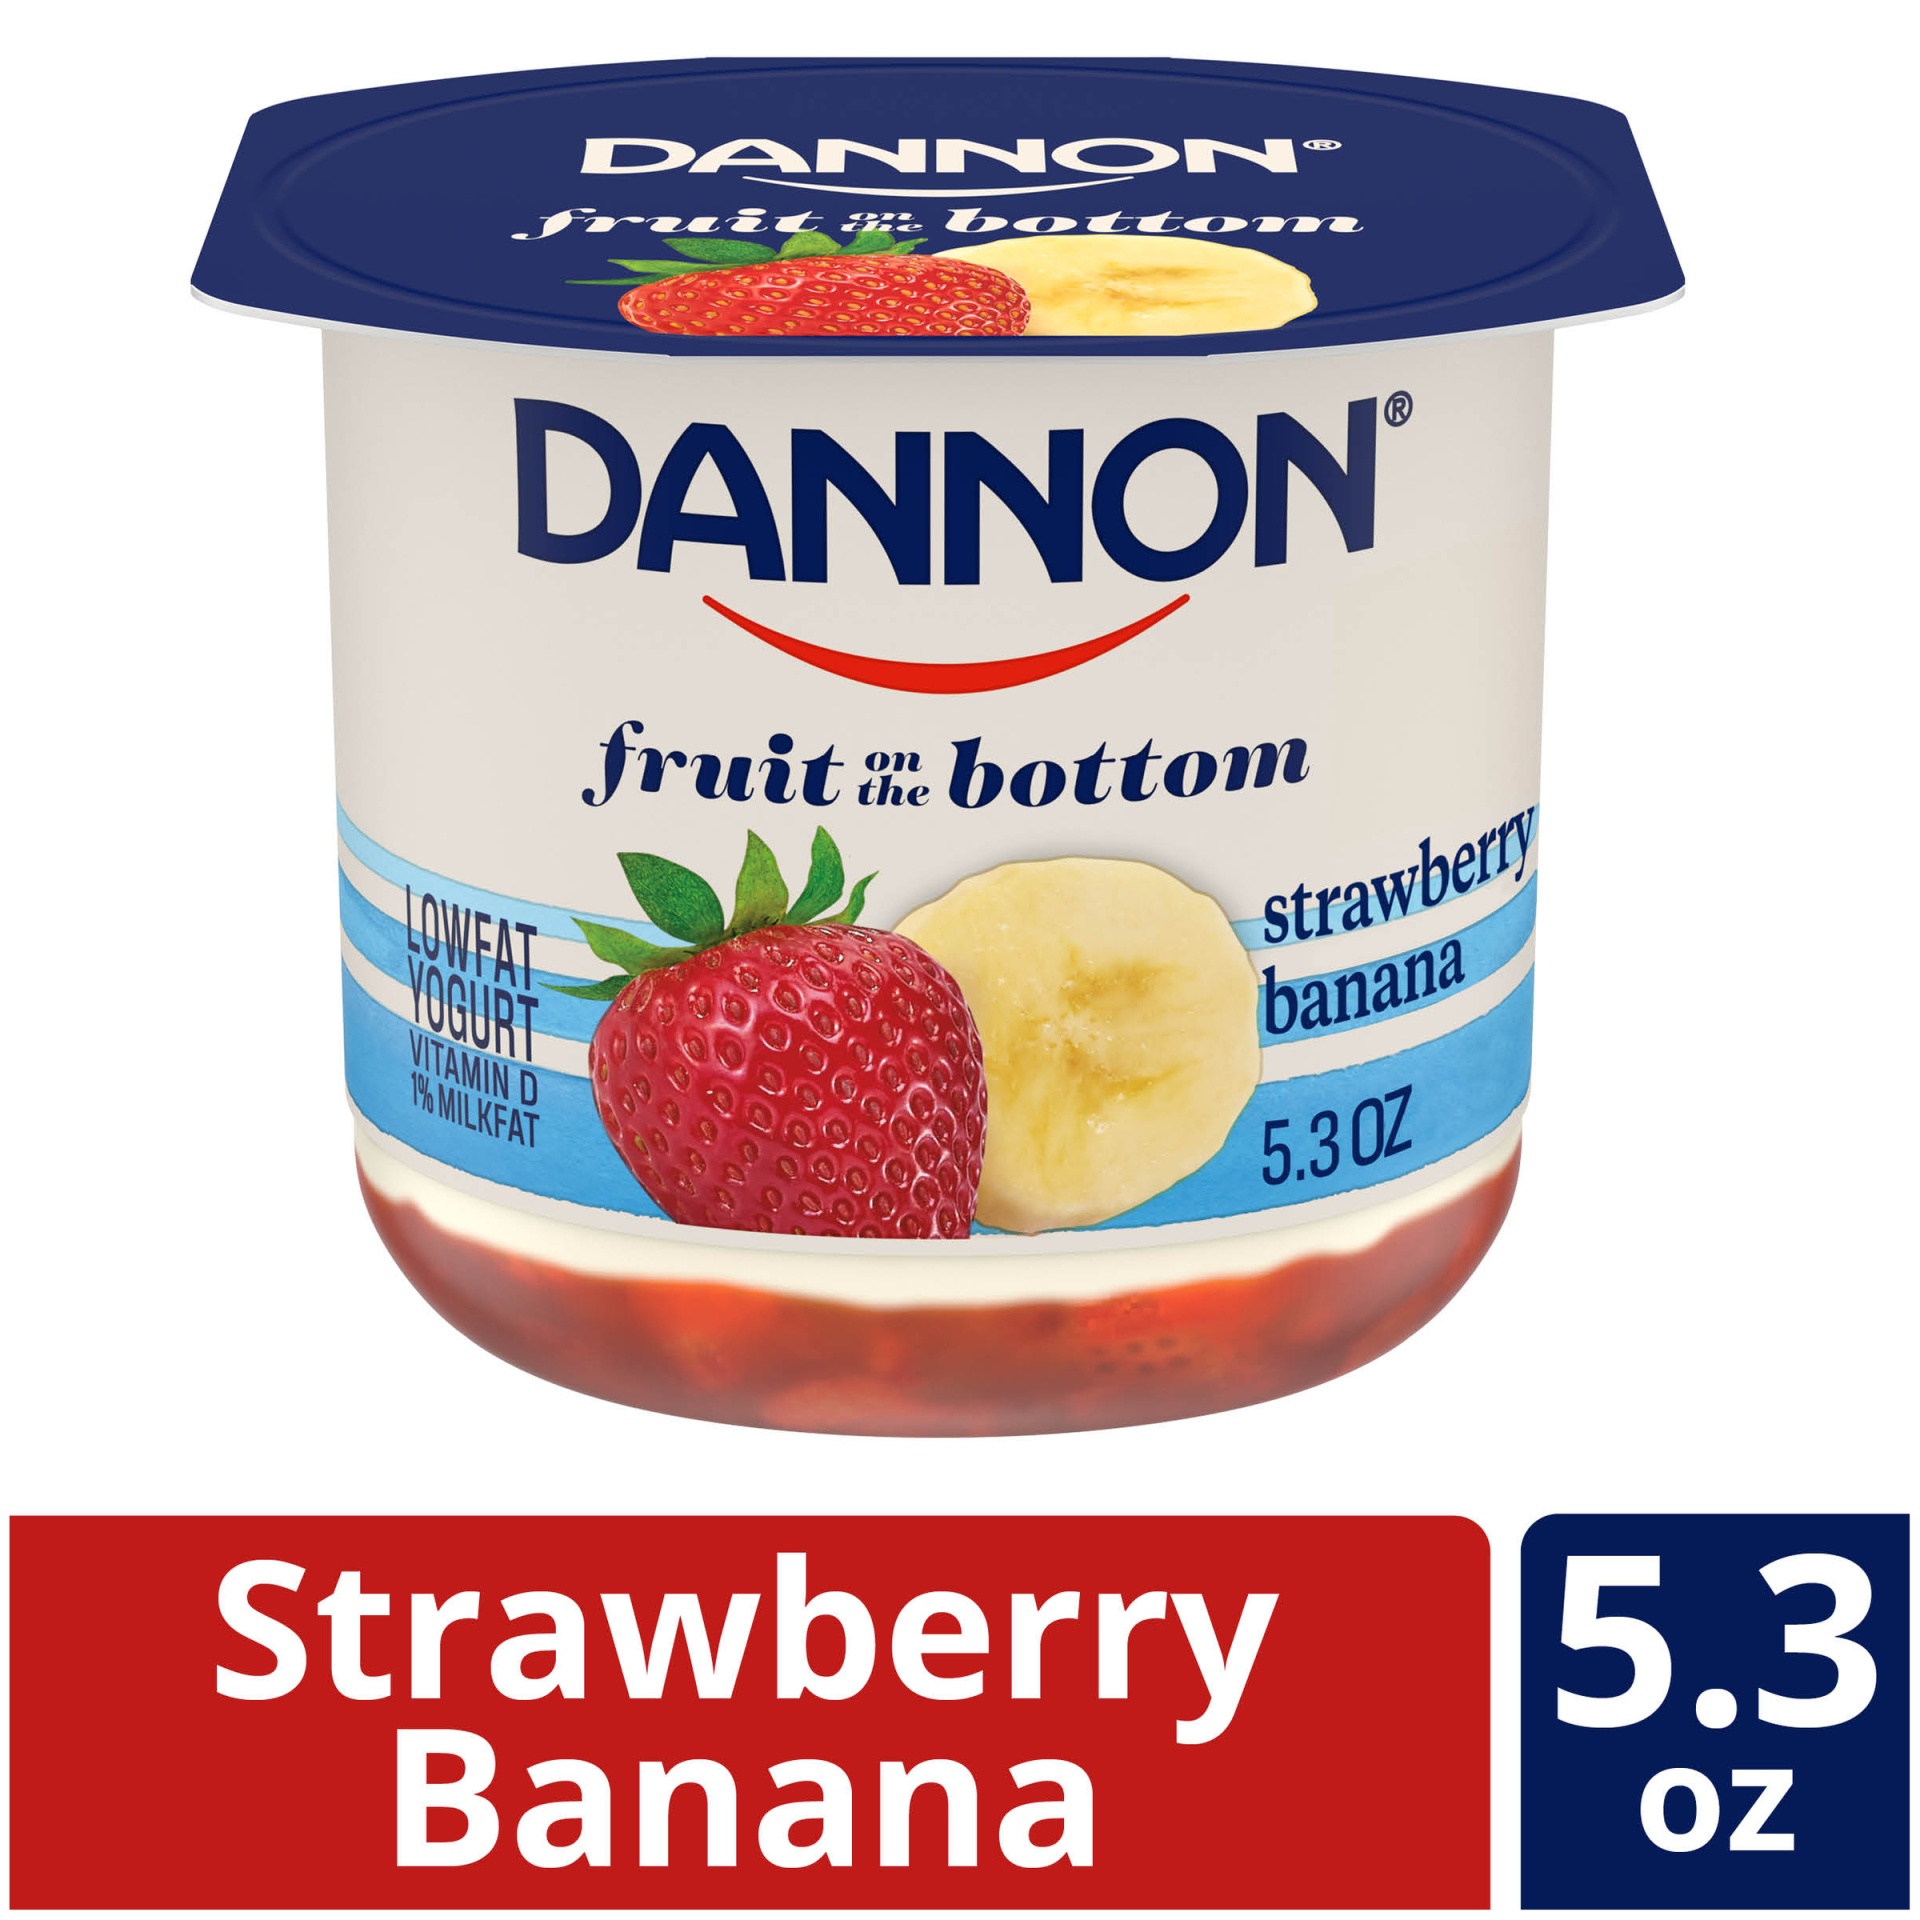 slide 1 of 7, Dannon Fruit on the Bottom Strawberry Banana Yogurt, 5.3 oz